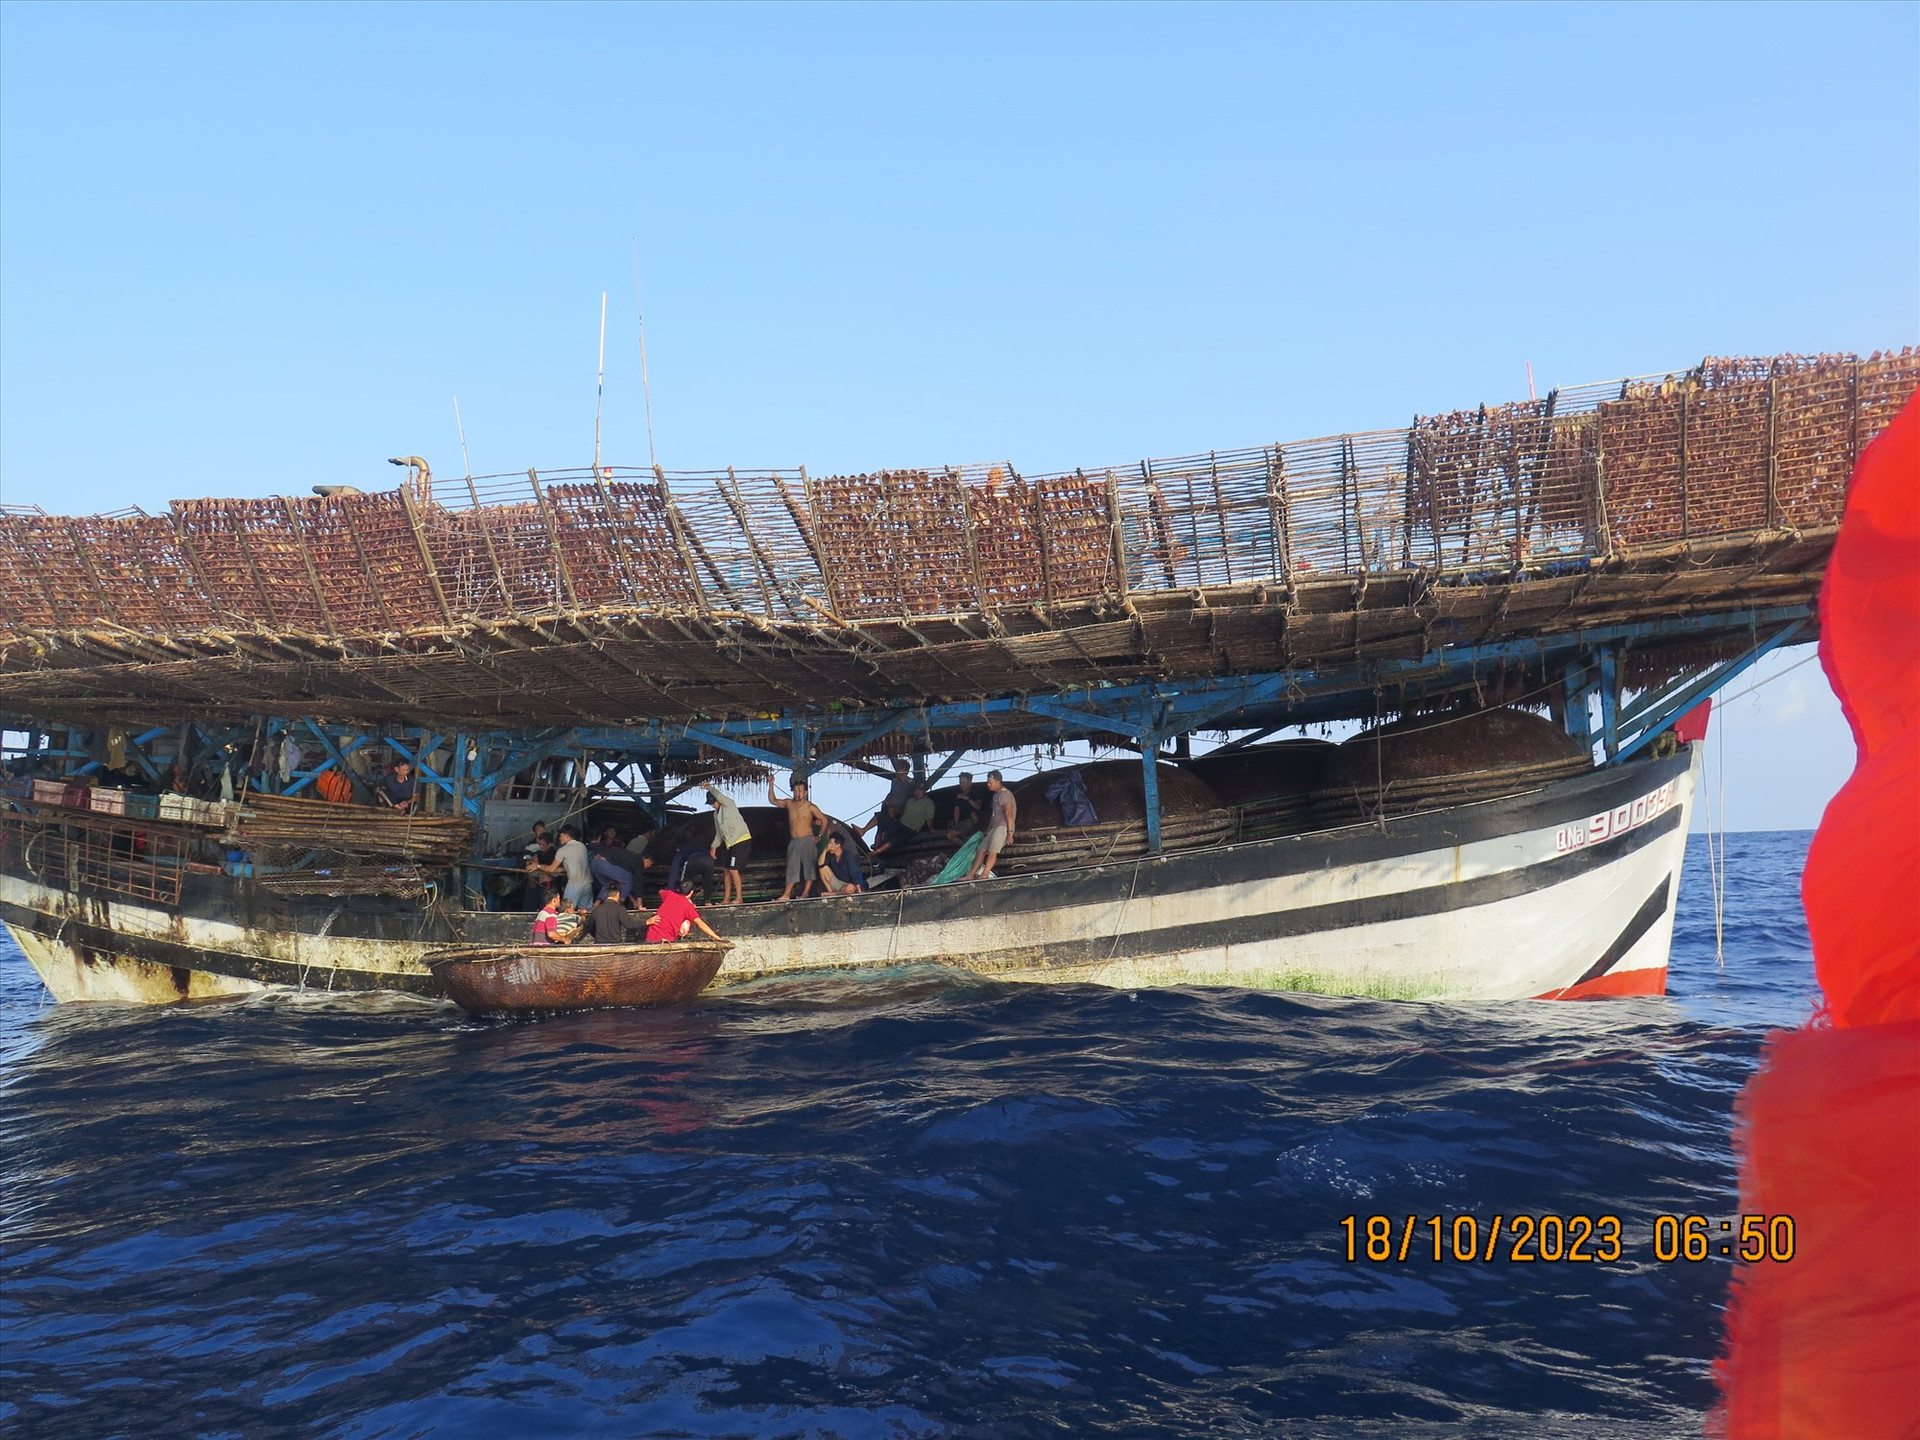 Ngư dân sẽ được đưa từ khu vực xảy ra vụ tai nạn chìm tàu trở về đất liền đầu giờ chiều nay.